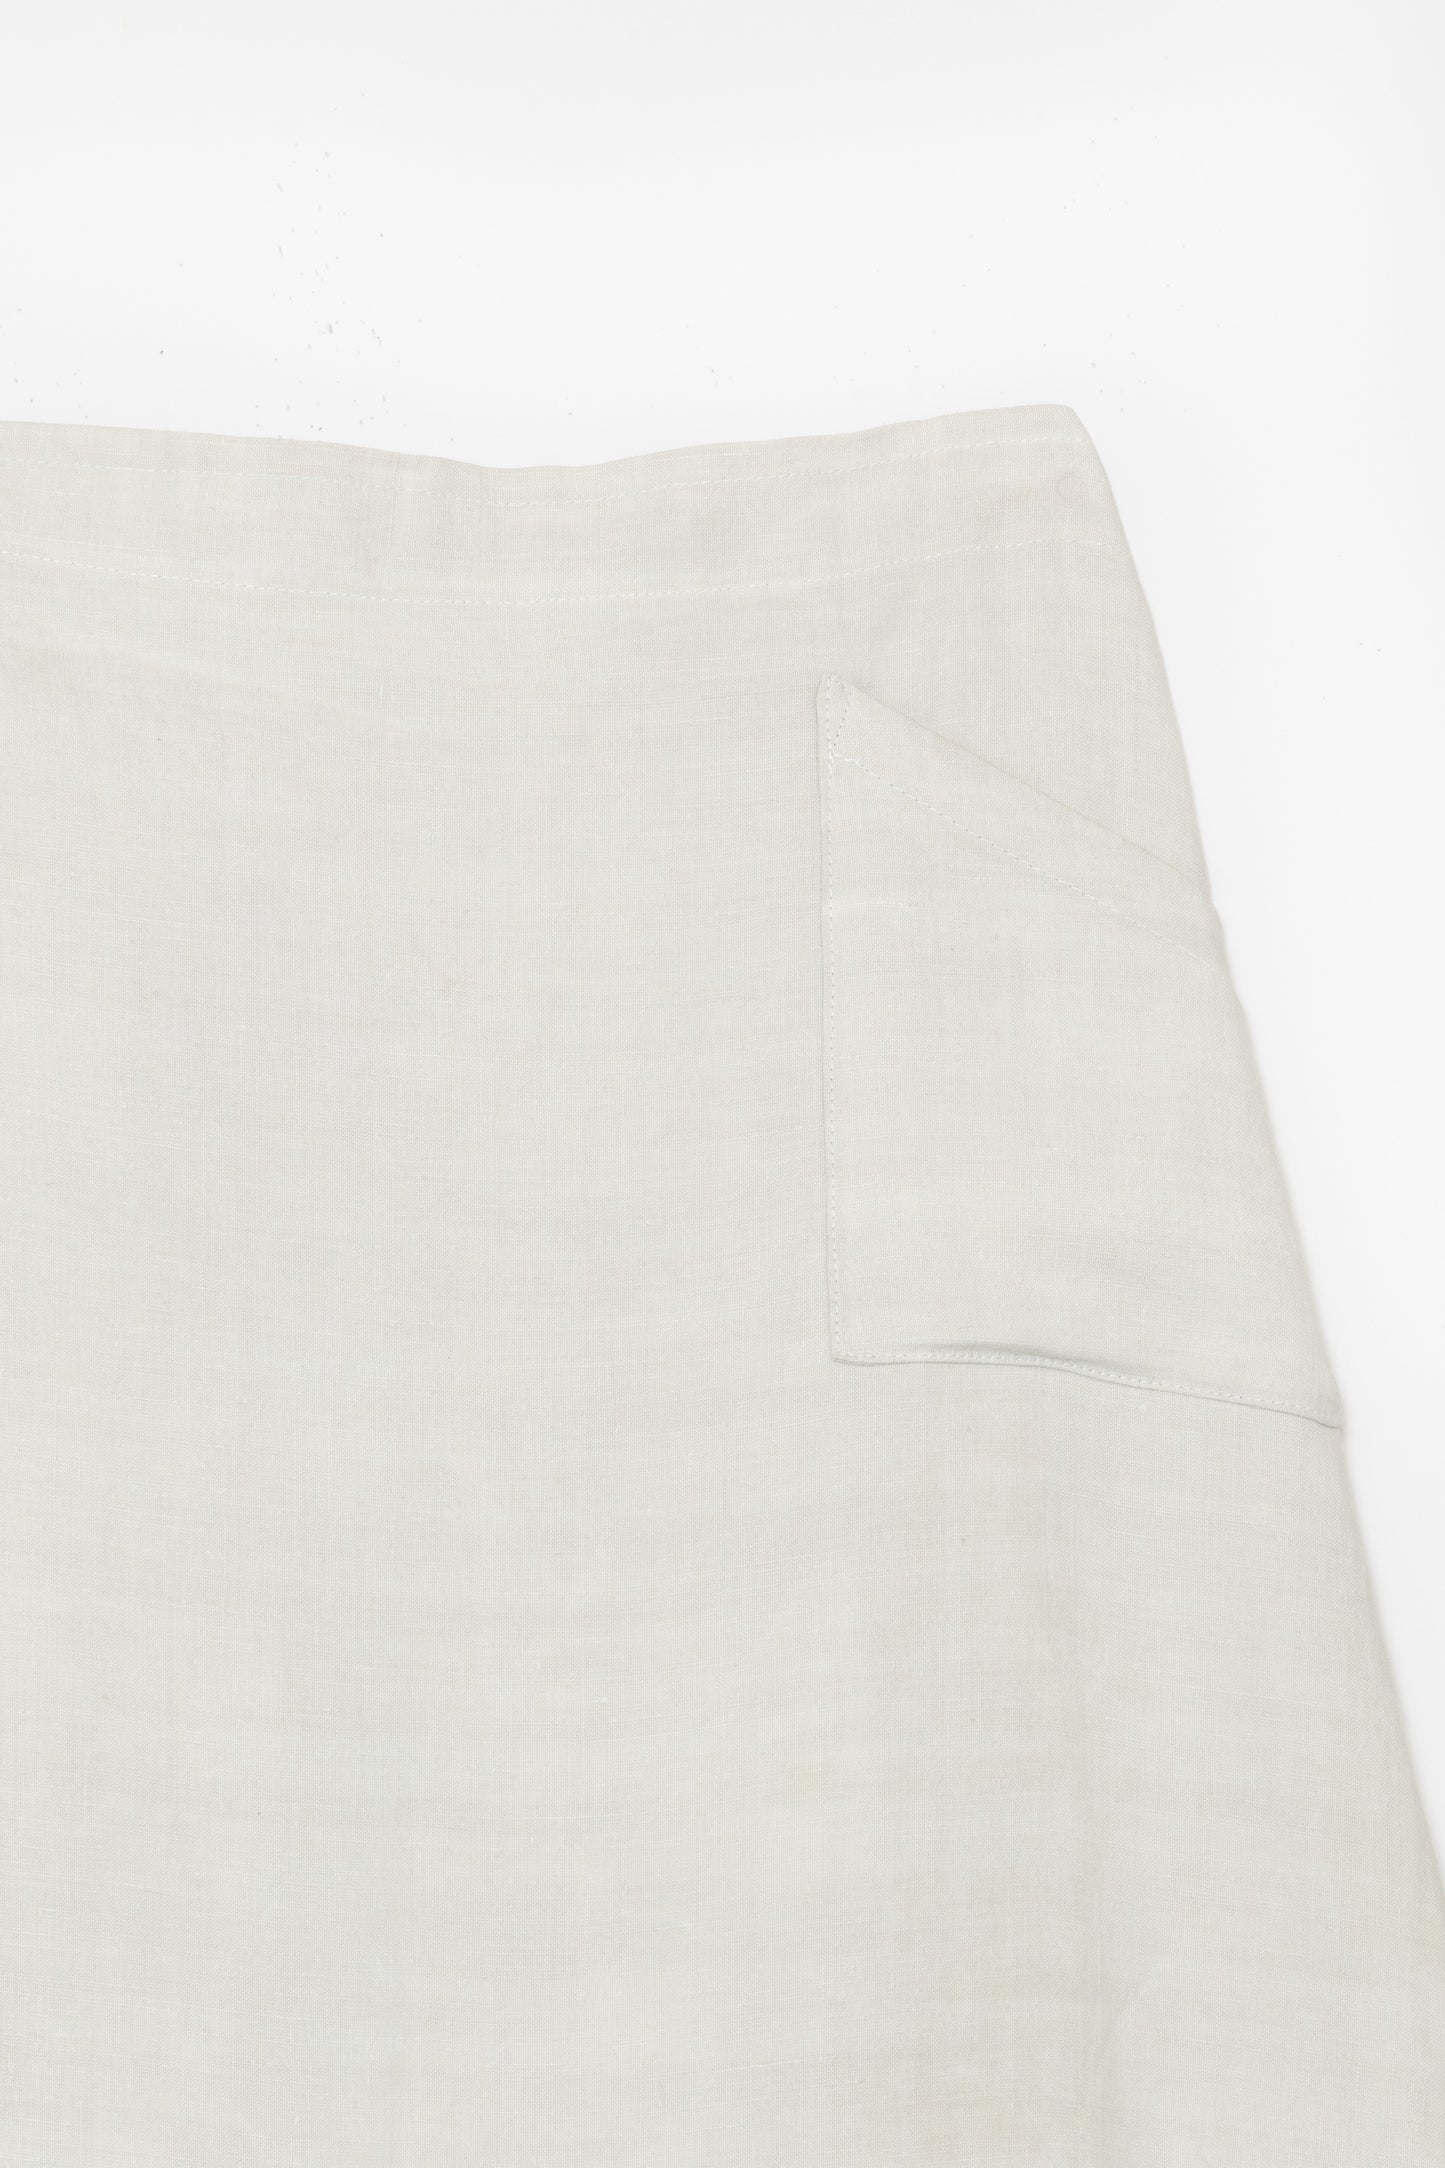 [Whiteread] Skirt 04 - Natural Linen